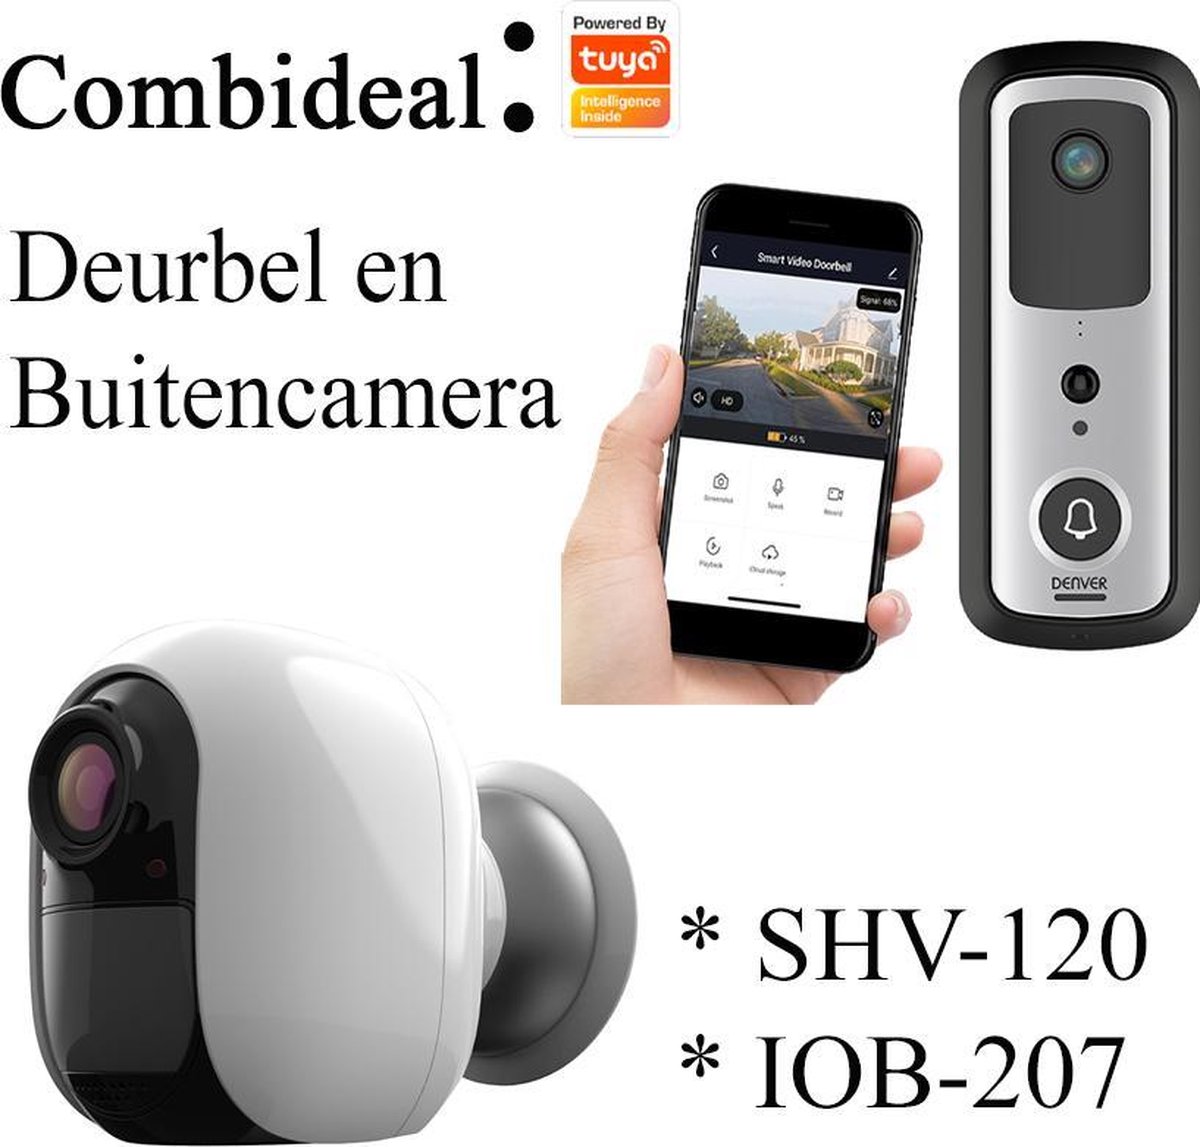 Denver Tuya Smart Combideal: SHV-120 smart deurbel + IOB-207 smart buiten  camera | bol.com